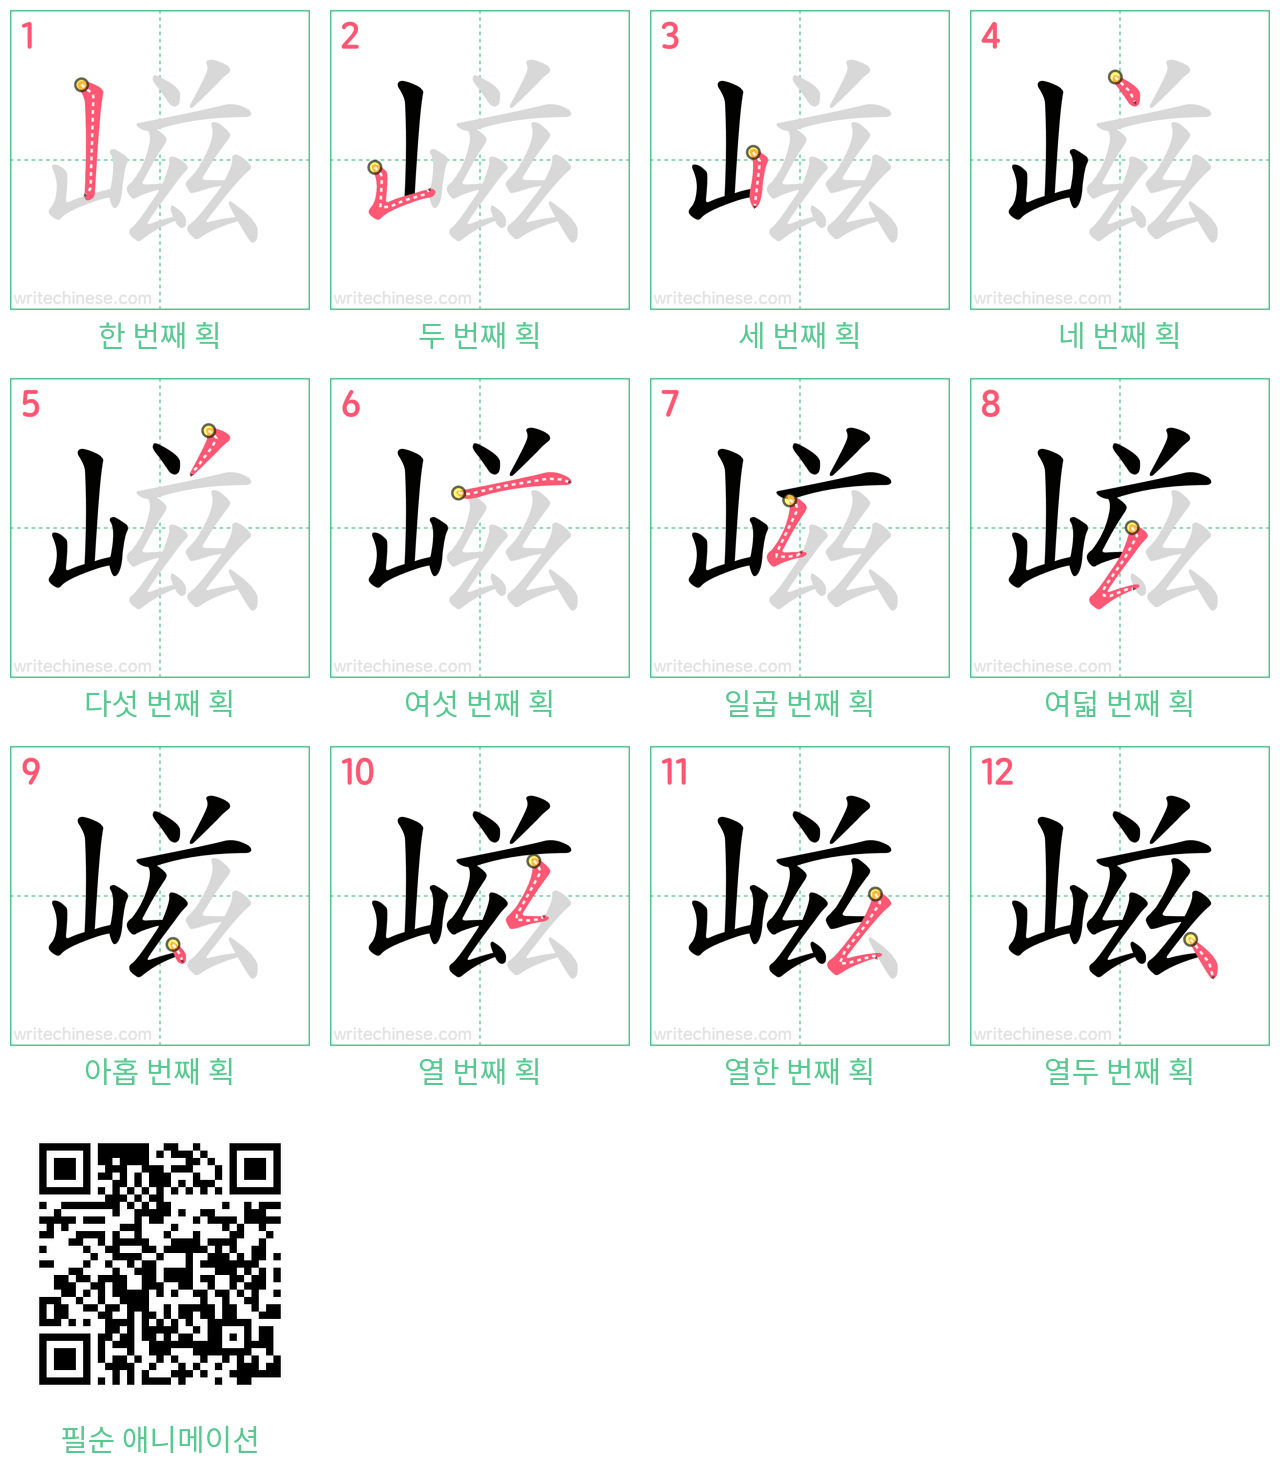 嵫 step-by-step stroke order diagrams